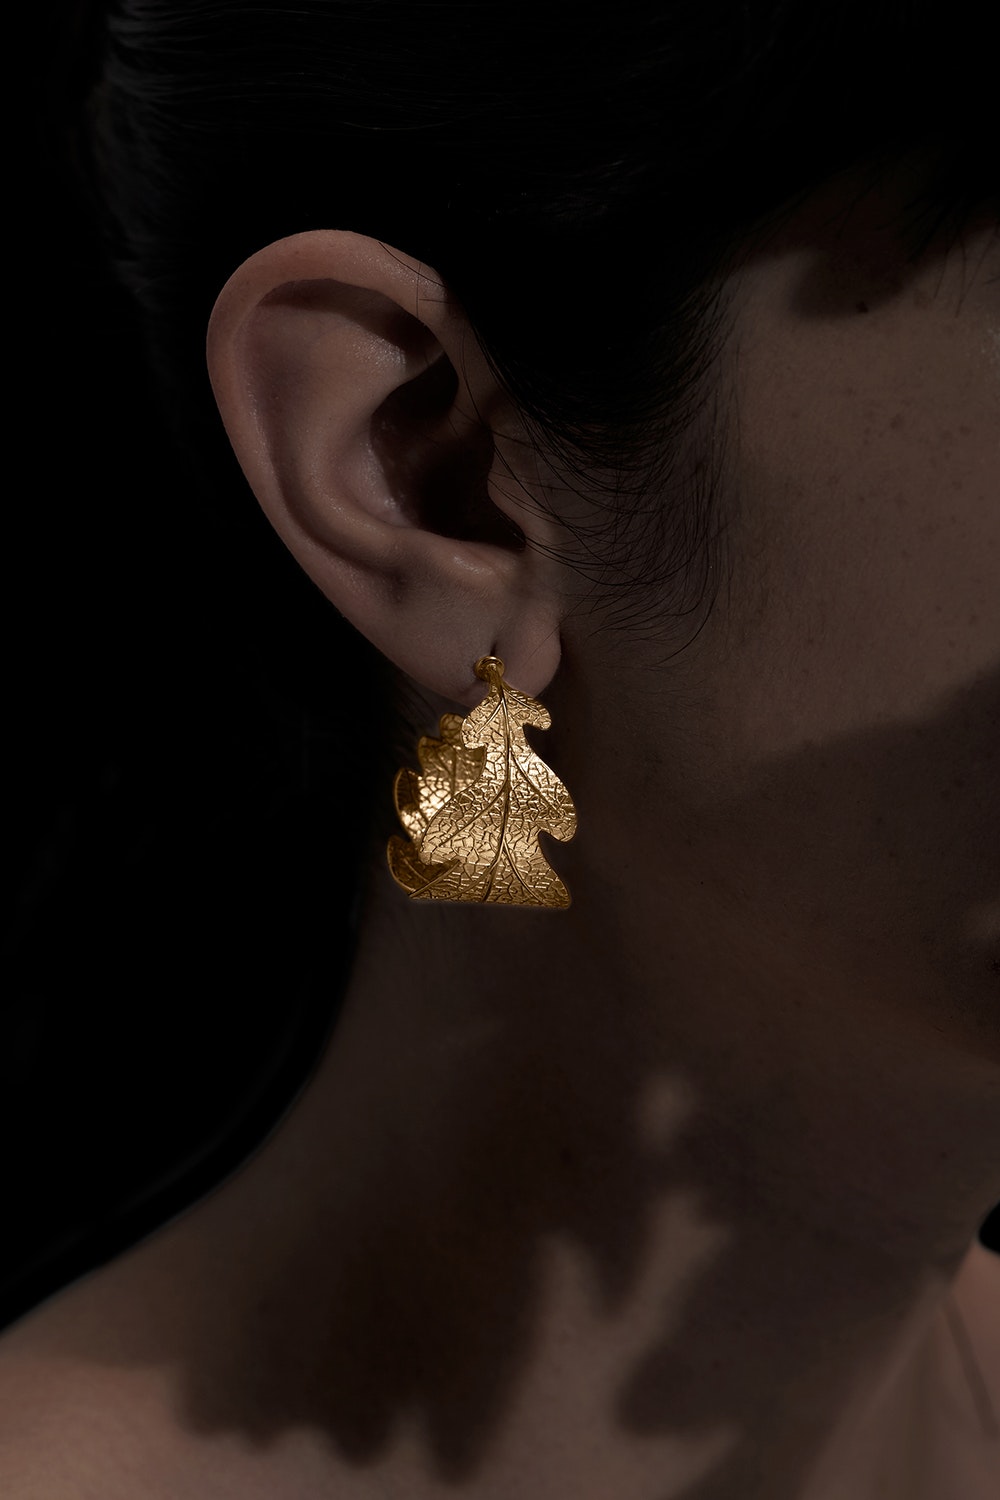 oak-leaf-earrings-gold-kw3429y-gold-front-0320934001551771784_1551771725